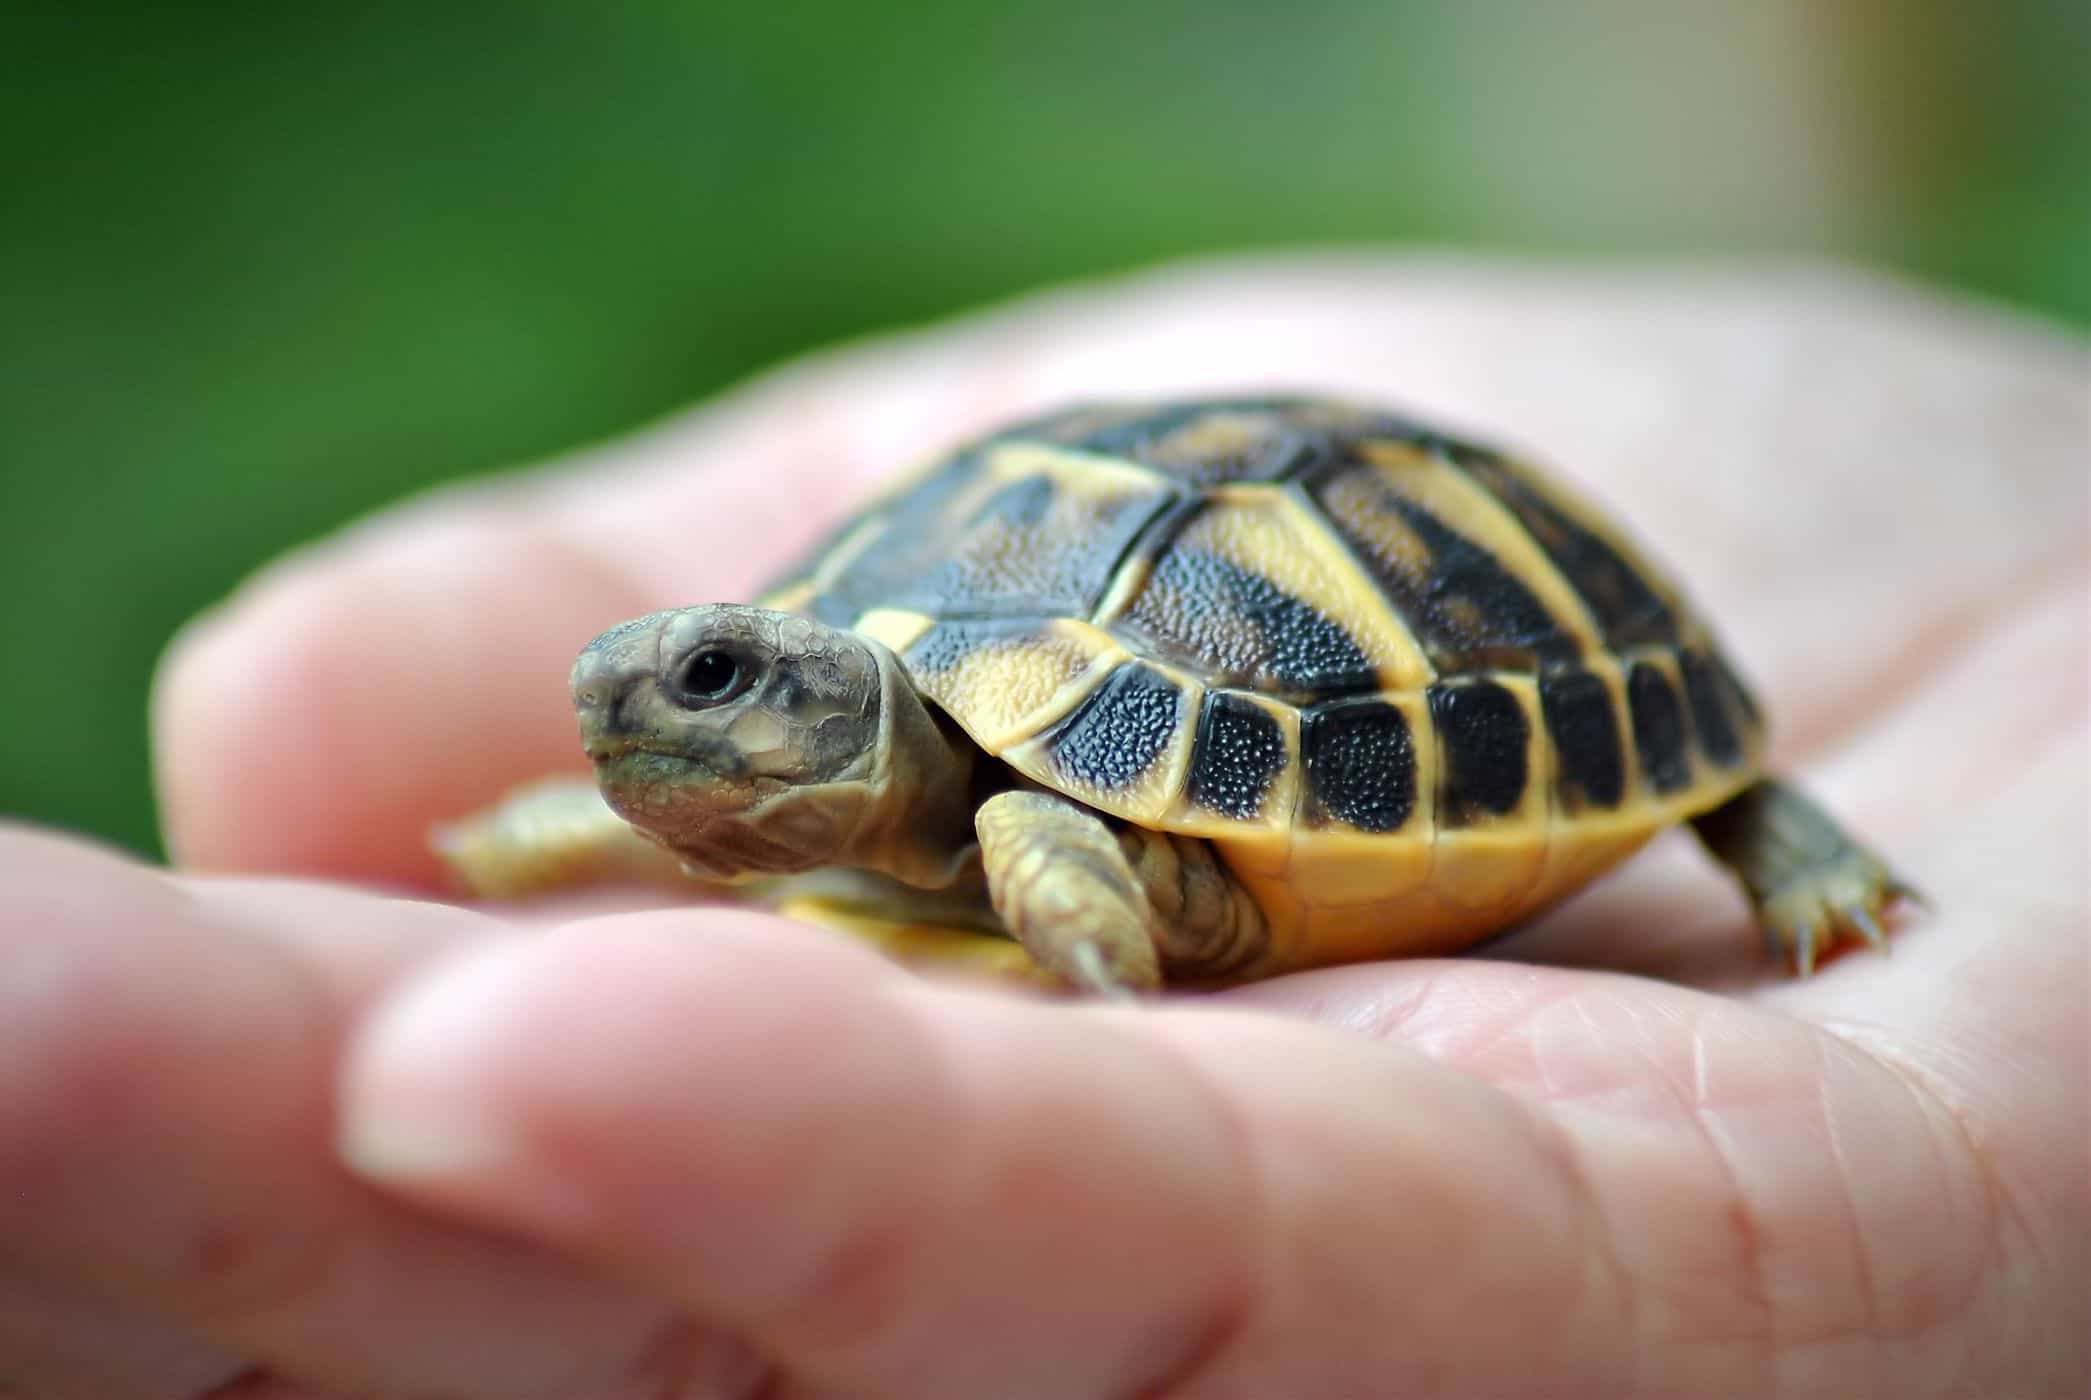 het houden van schildpadden verhoogt het risico op salmonella-infectie